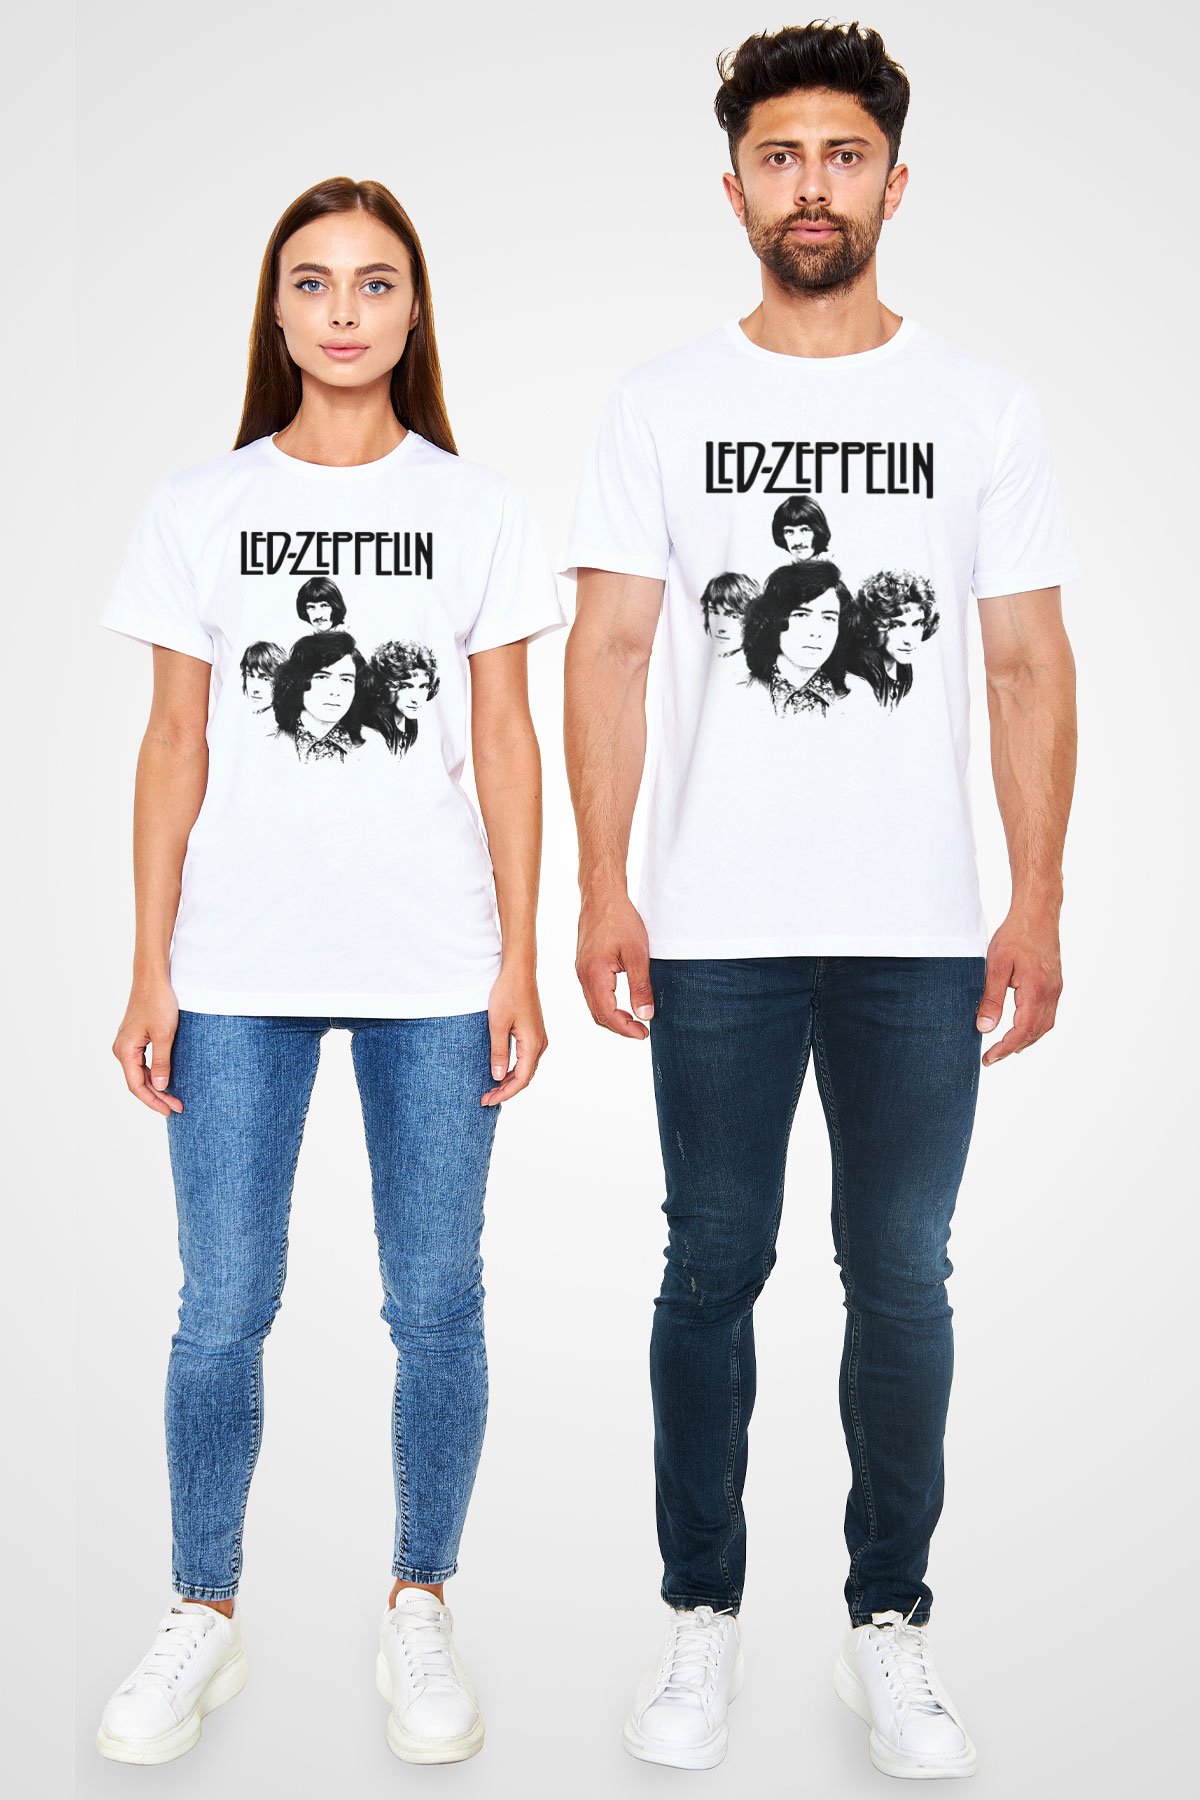 Led Zeppelin White Unisex T-Shirt - Tees - Shirts